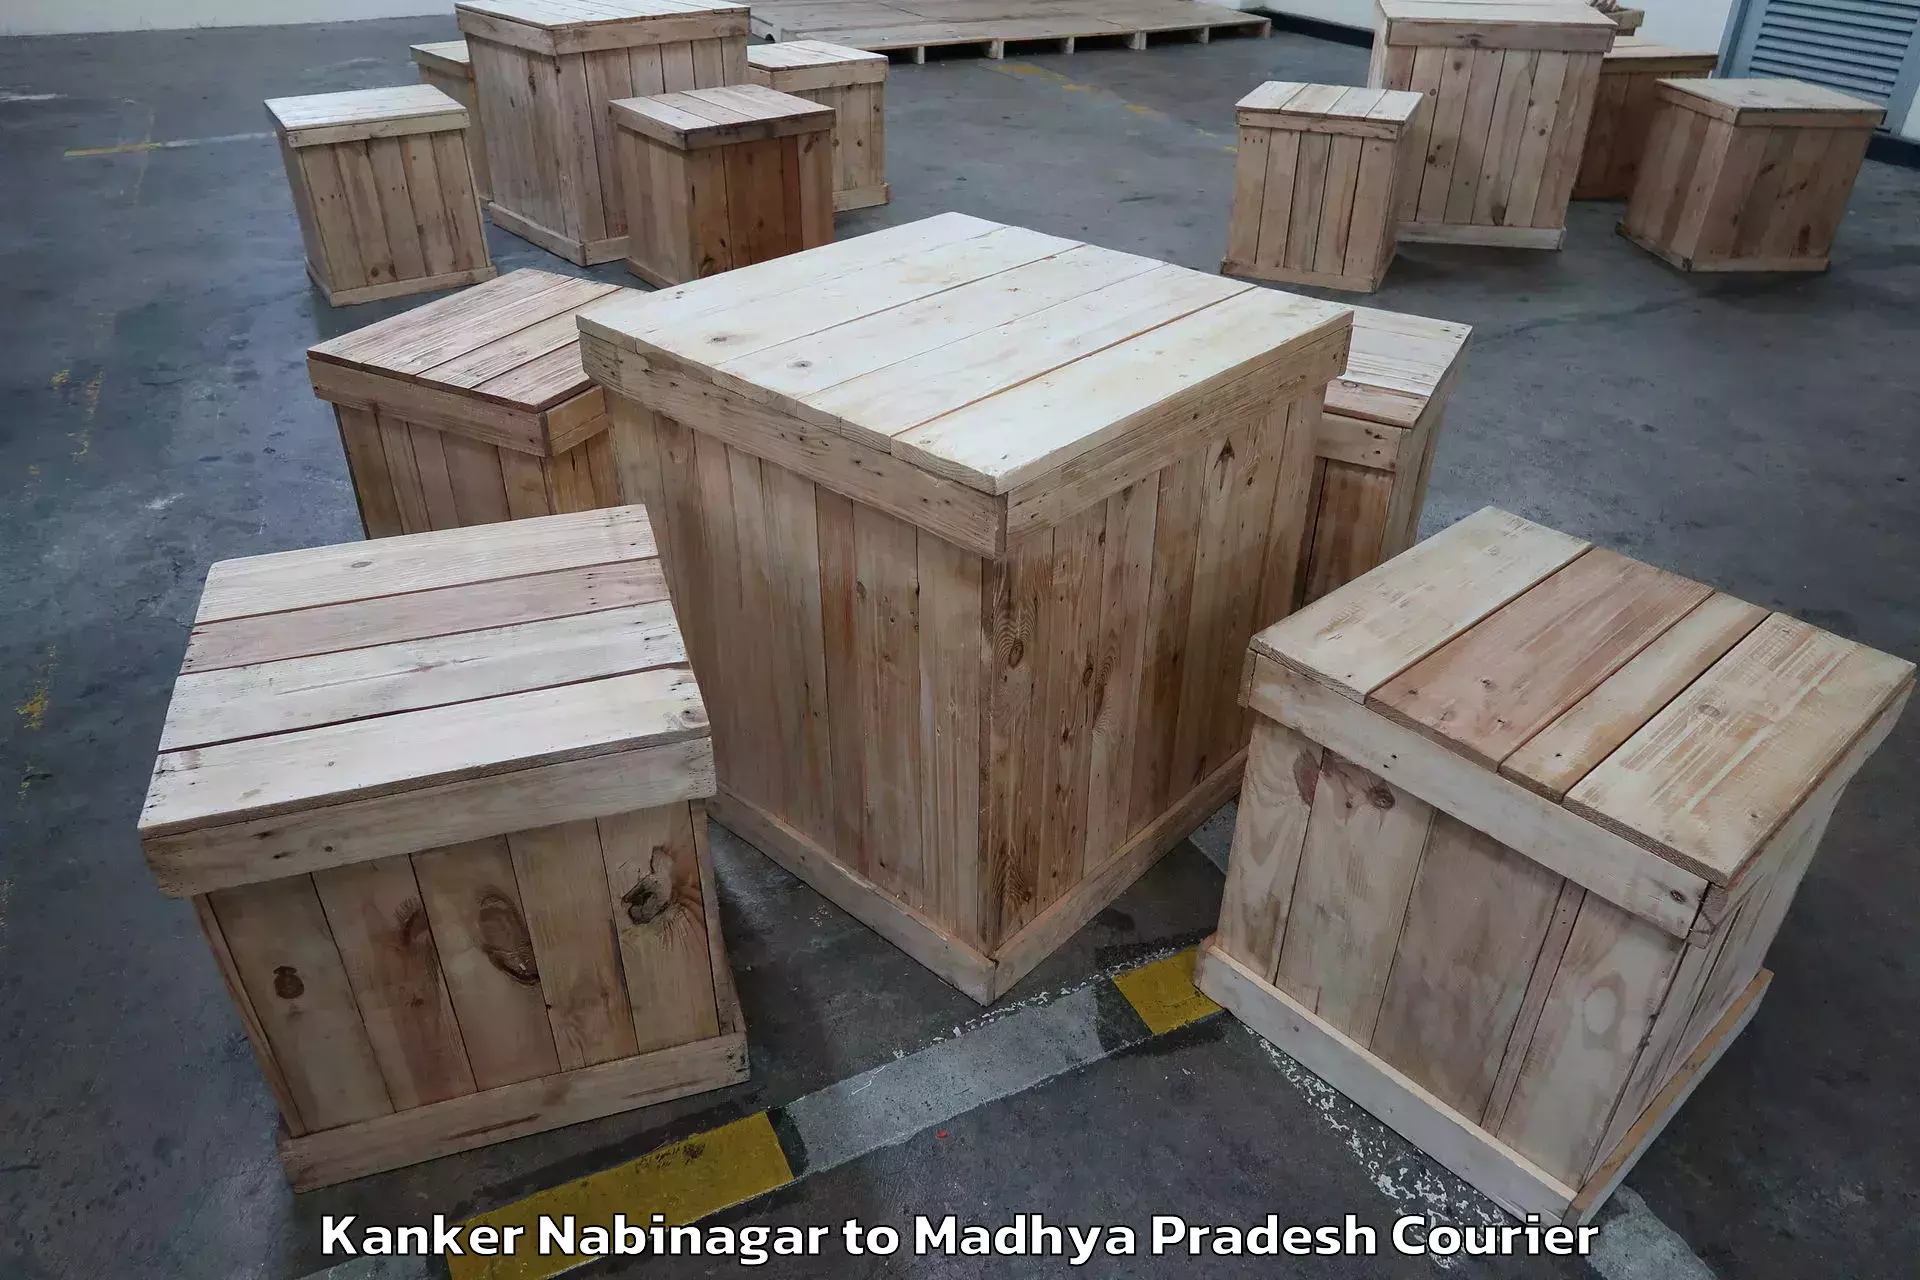 Furniture delivery service Kanker Nabinagar to Ujjain